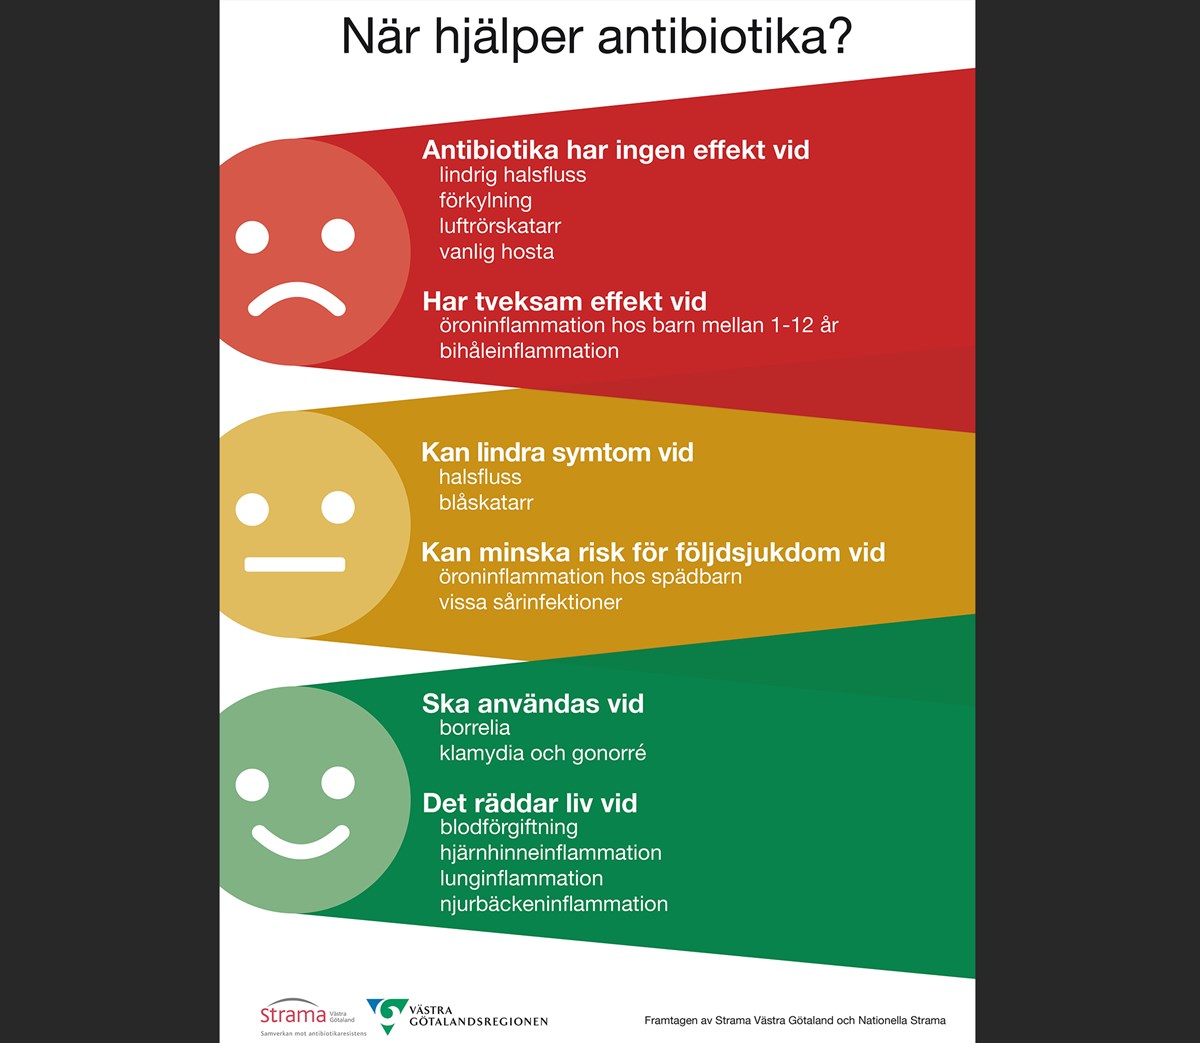 beskrivning av när antibiotika hjälper och inte hjälper